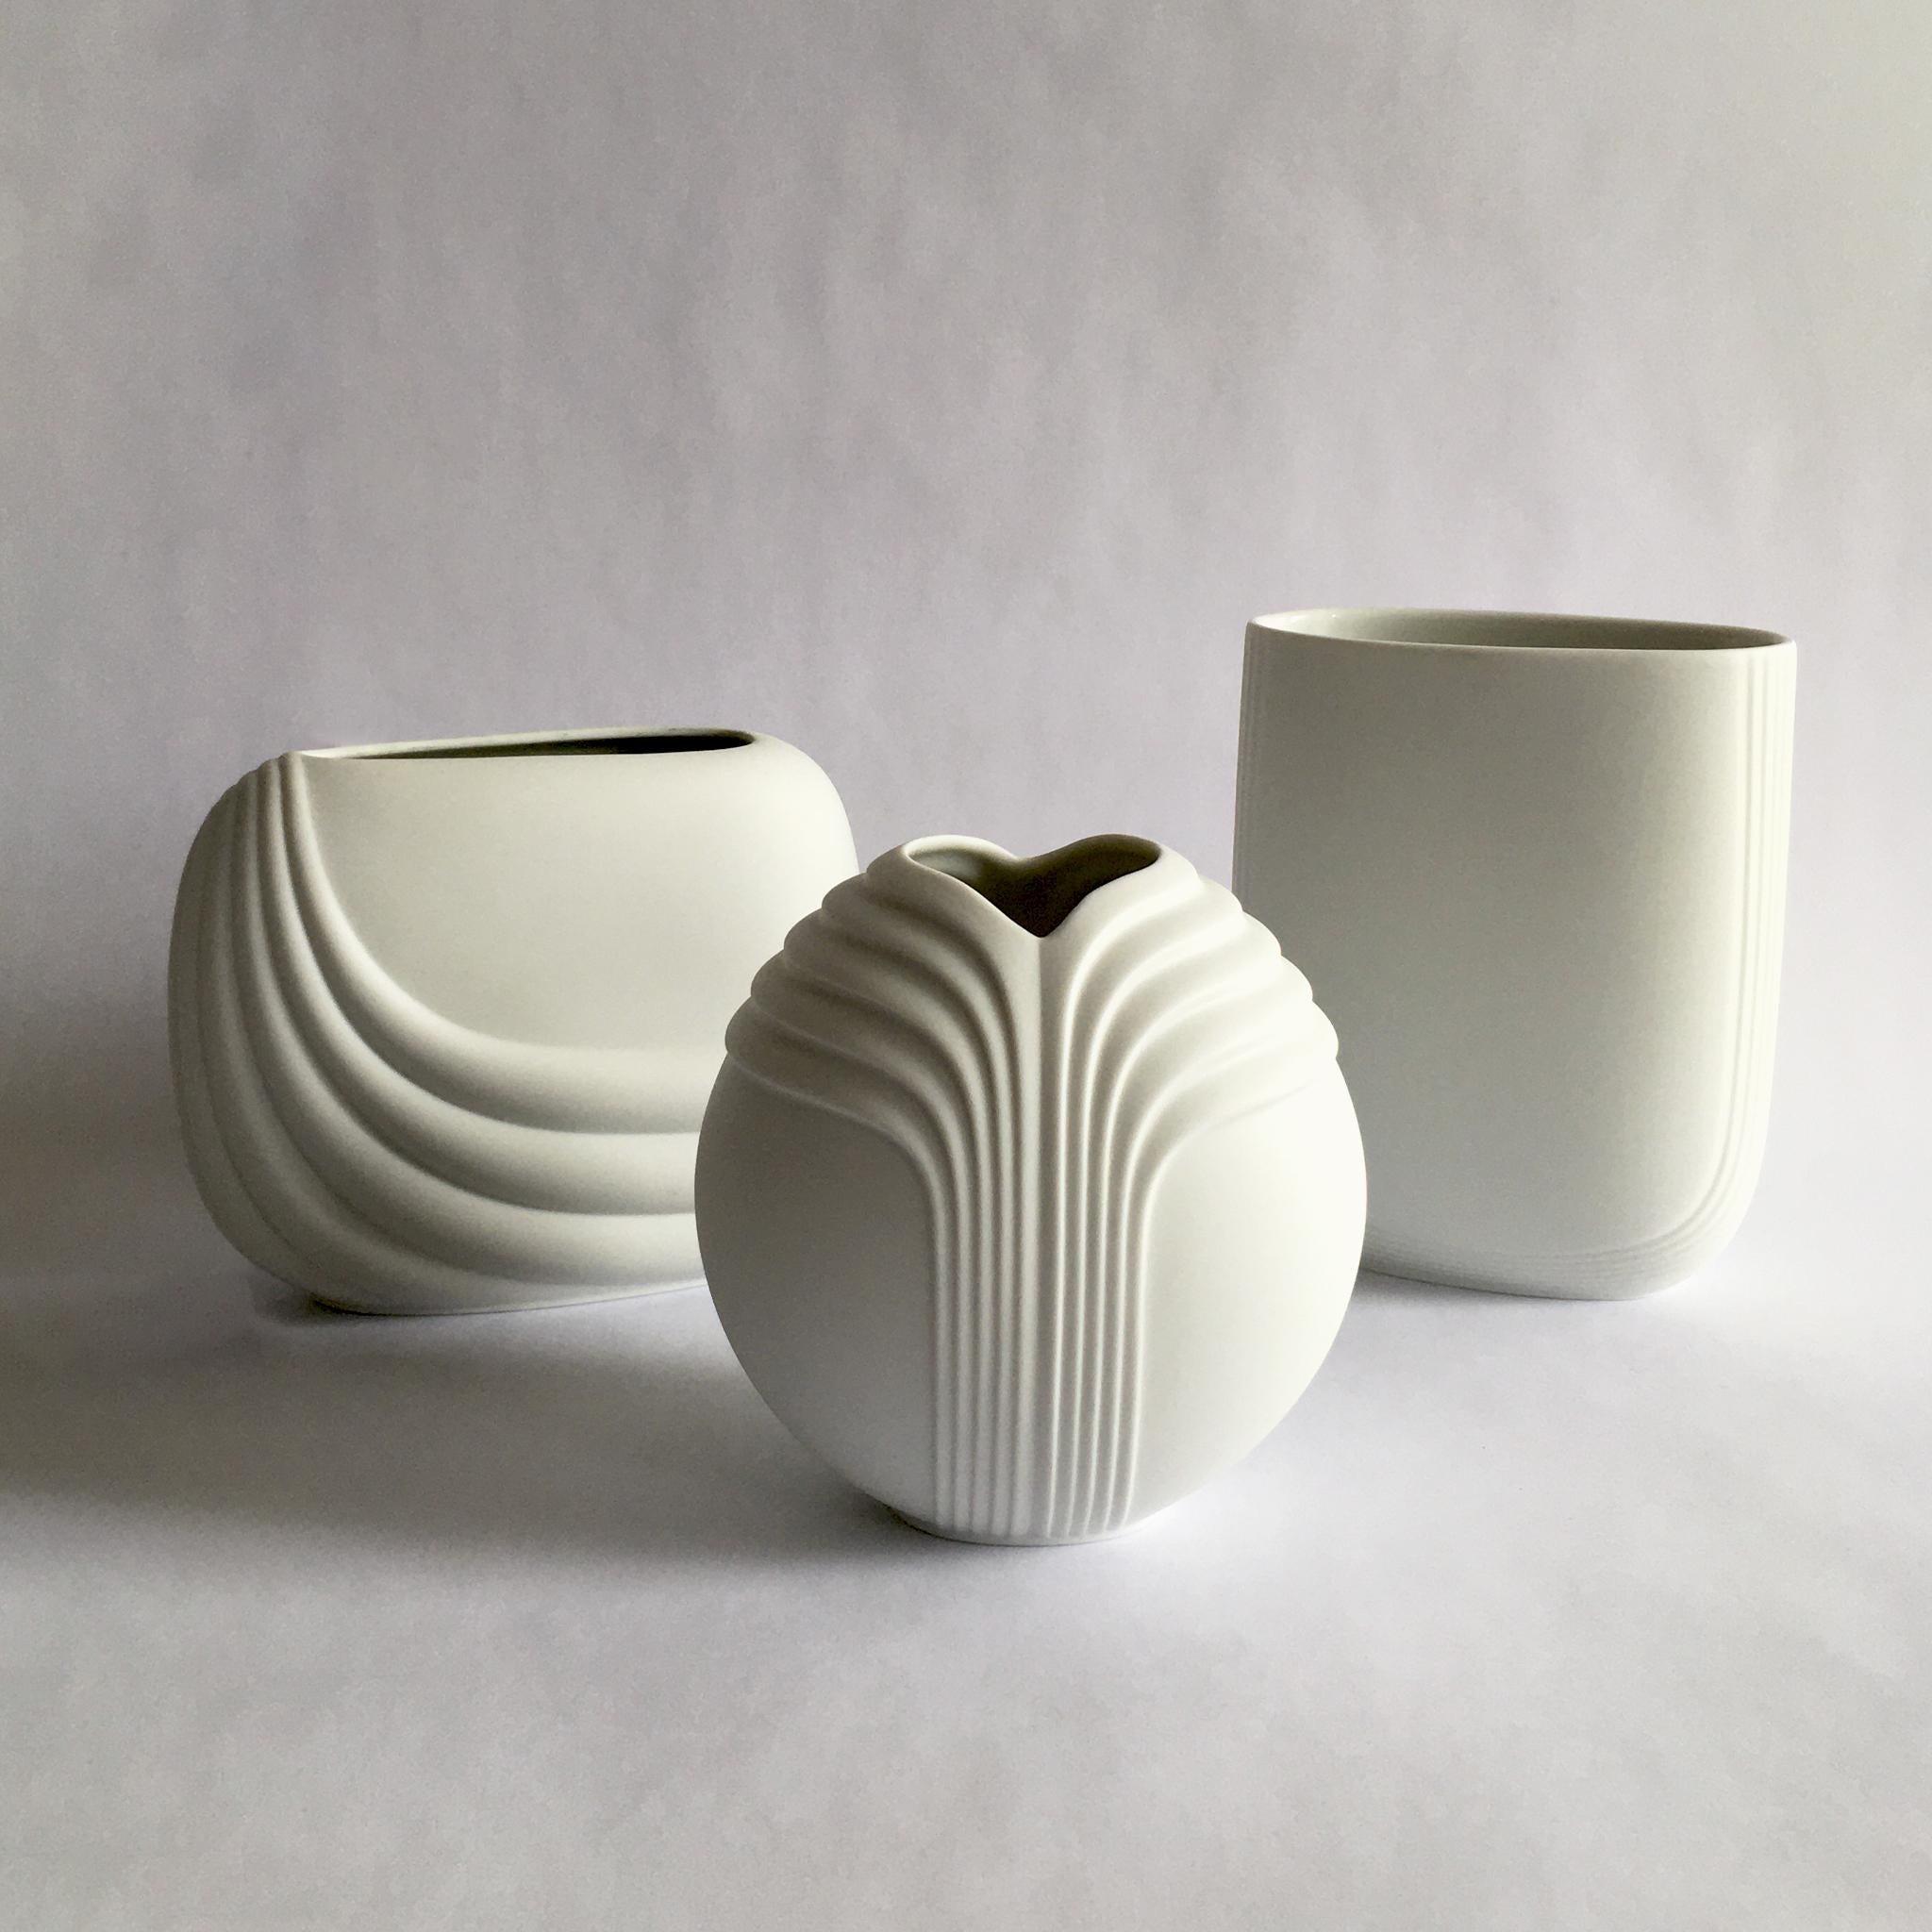 German Rosenthal Studio Line White Porcelain Bisque Vase by Uta Feyl, Circular Shape